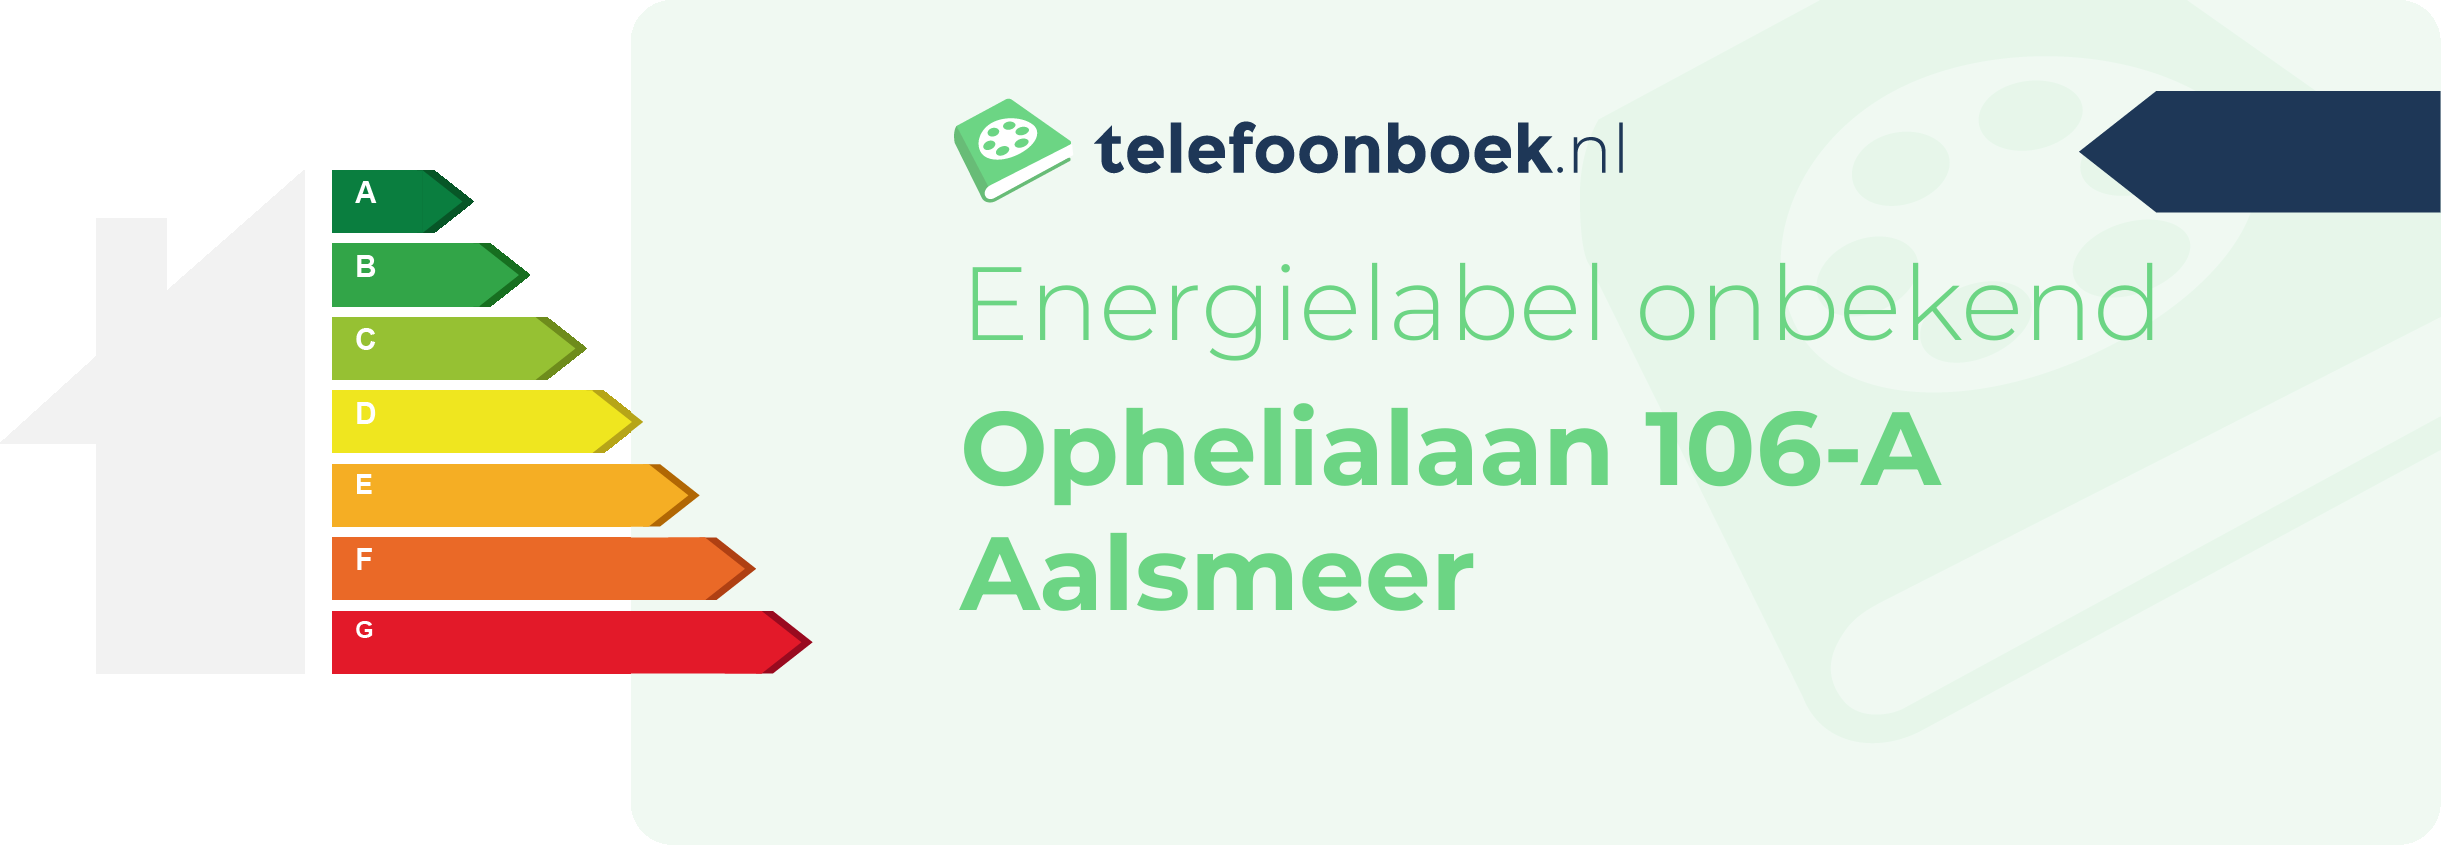 Energielabel Ophelialaan 106-A Aalsmeer